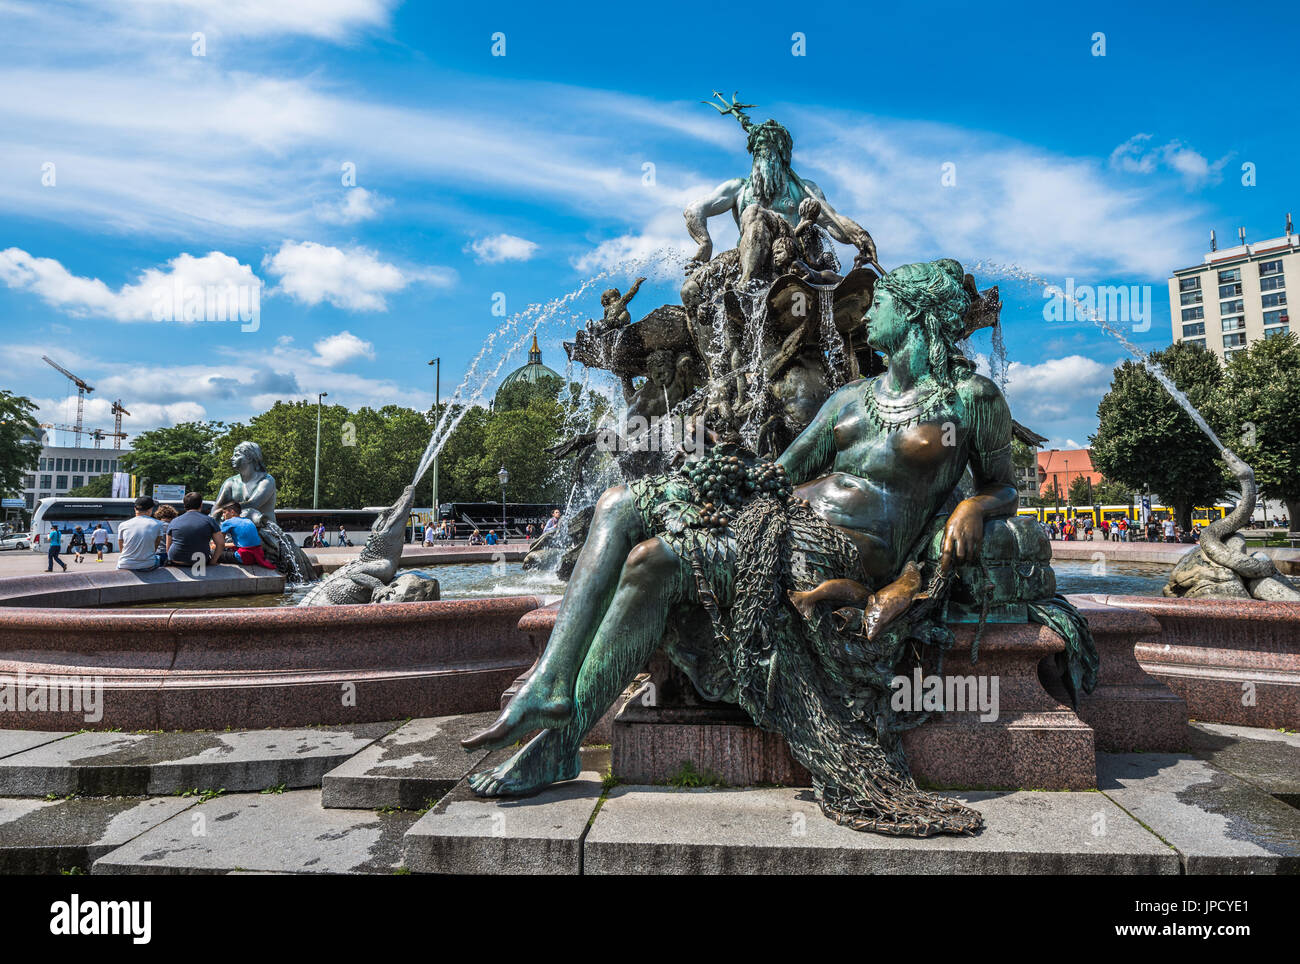 Neptunbrunnen ou fontaine de Neptune à la place Alexanderplatz, Berlin, Allemagne Banque D'Images